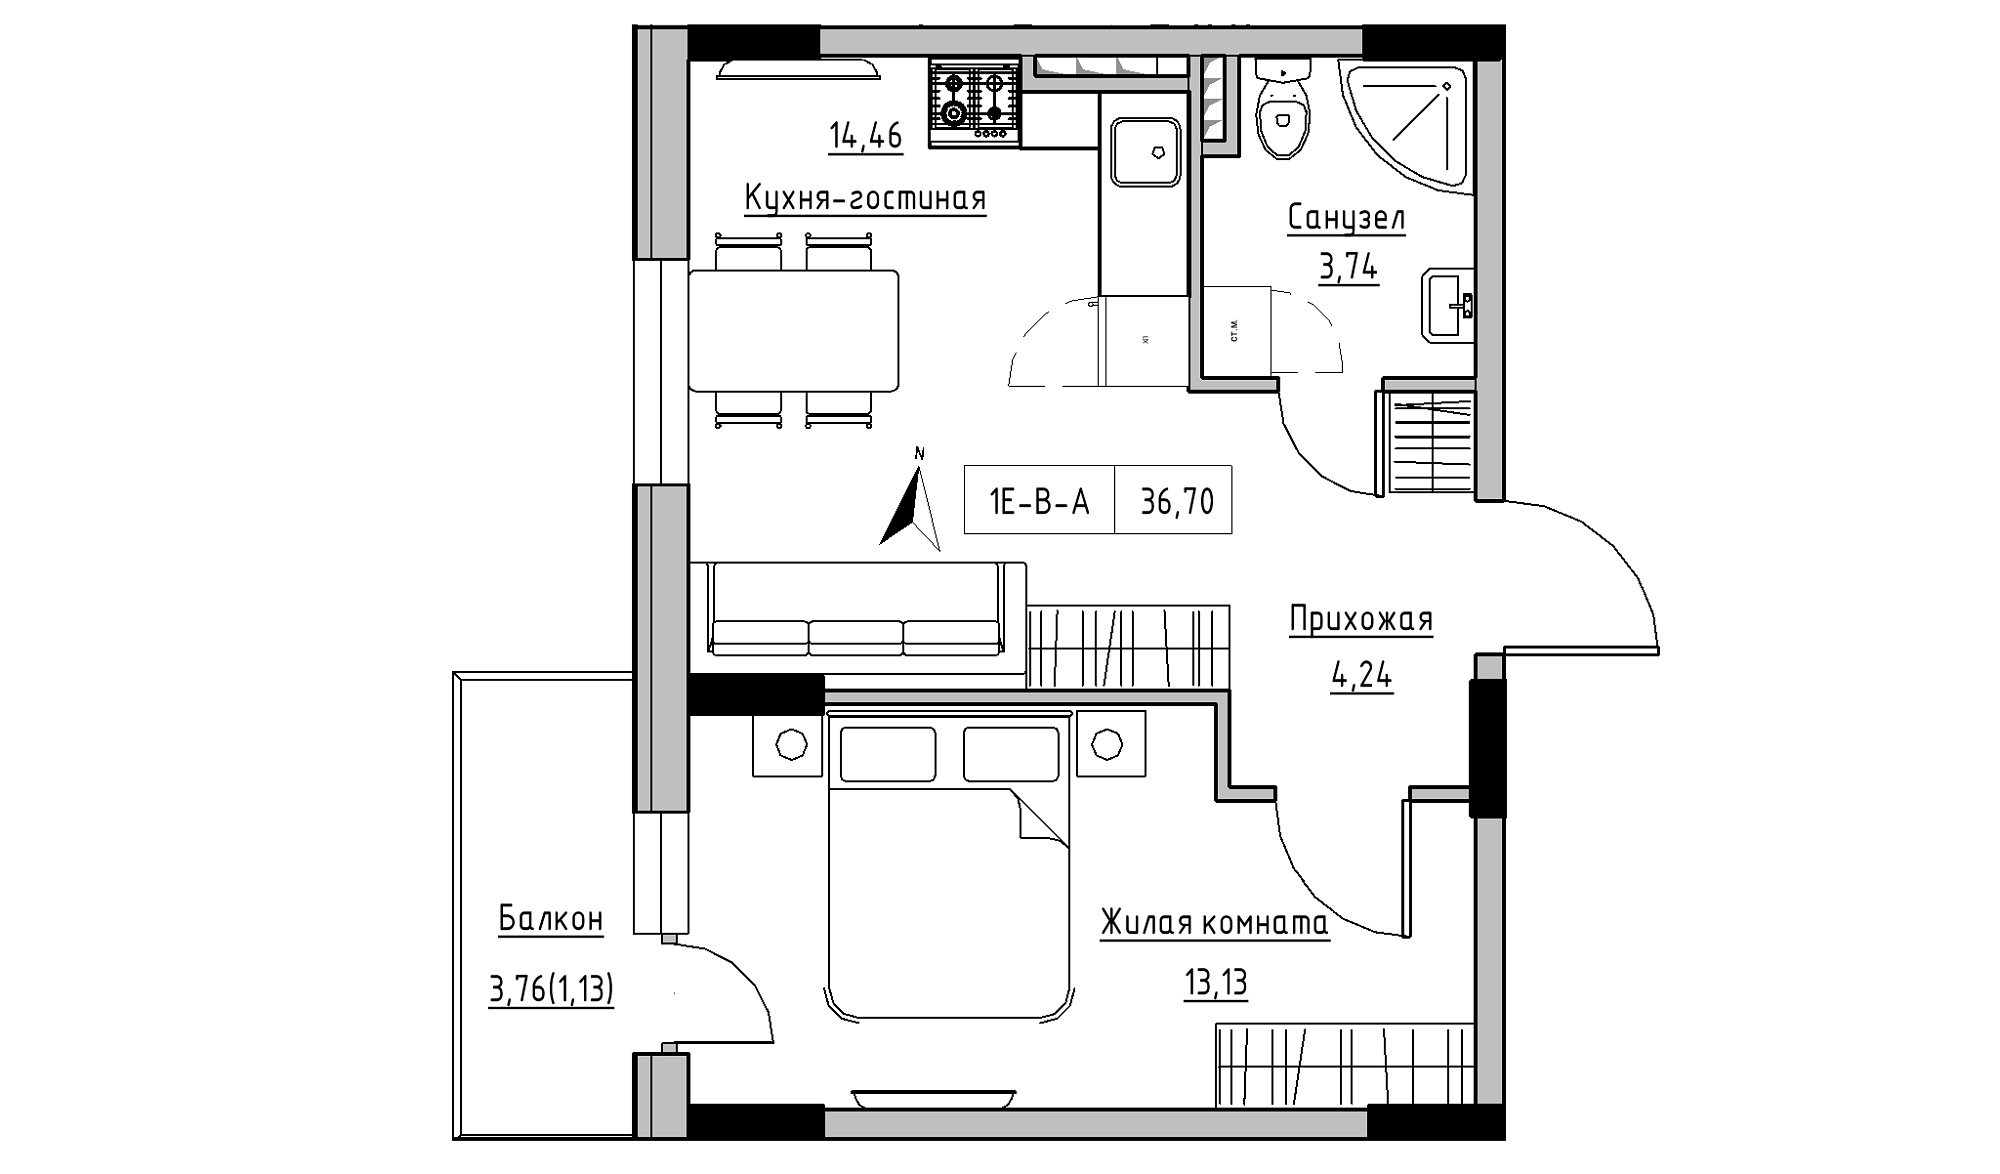 Планування 1-к квартира площею 36.7м2, KS-025-03/0004.